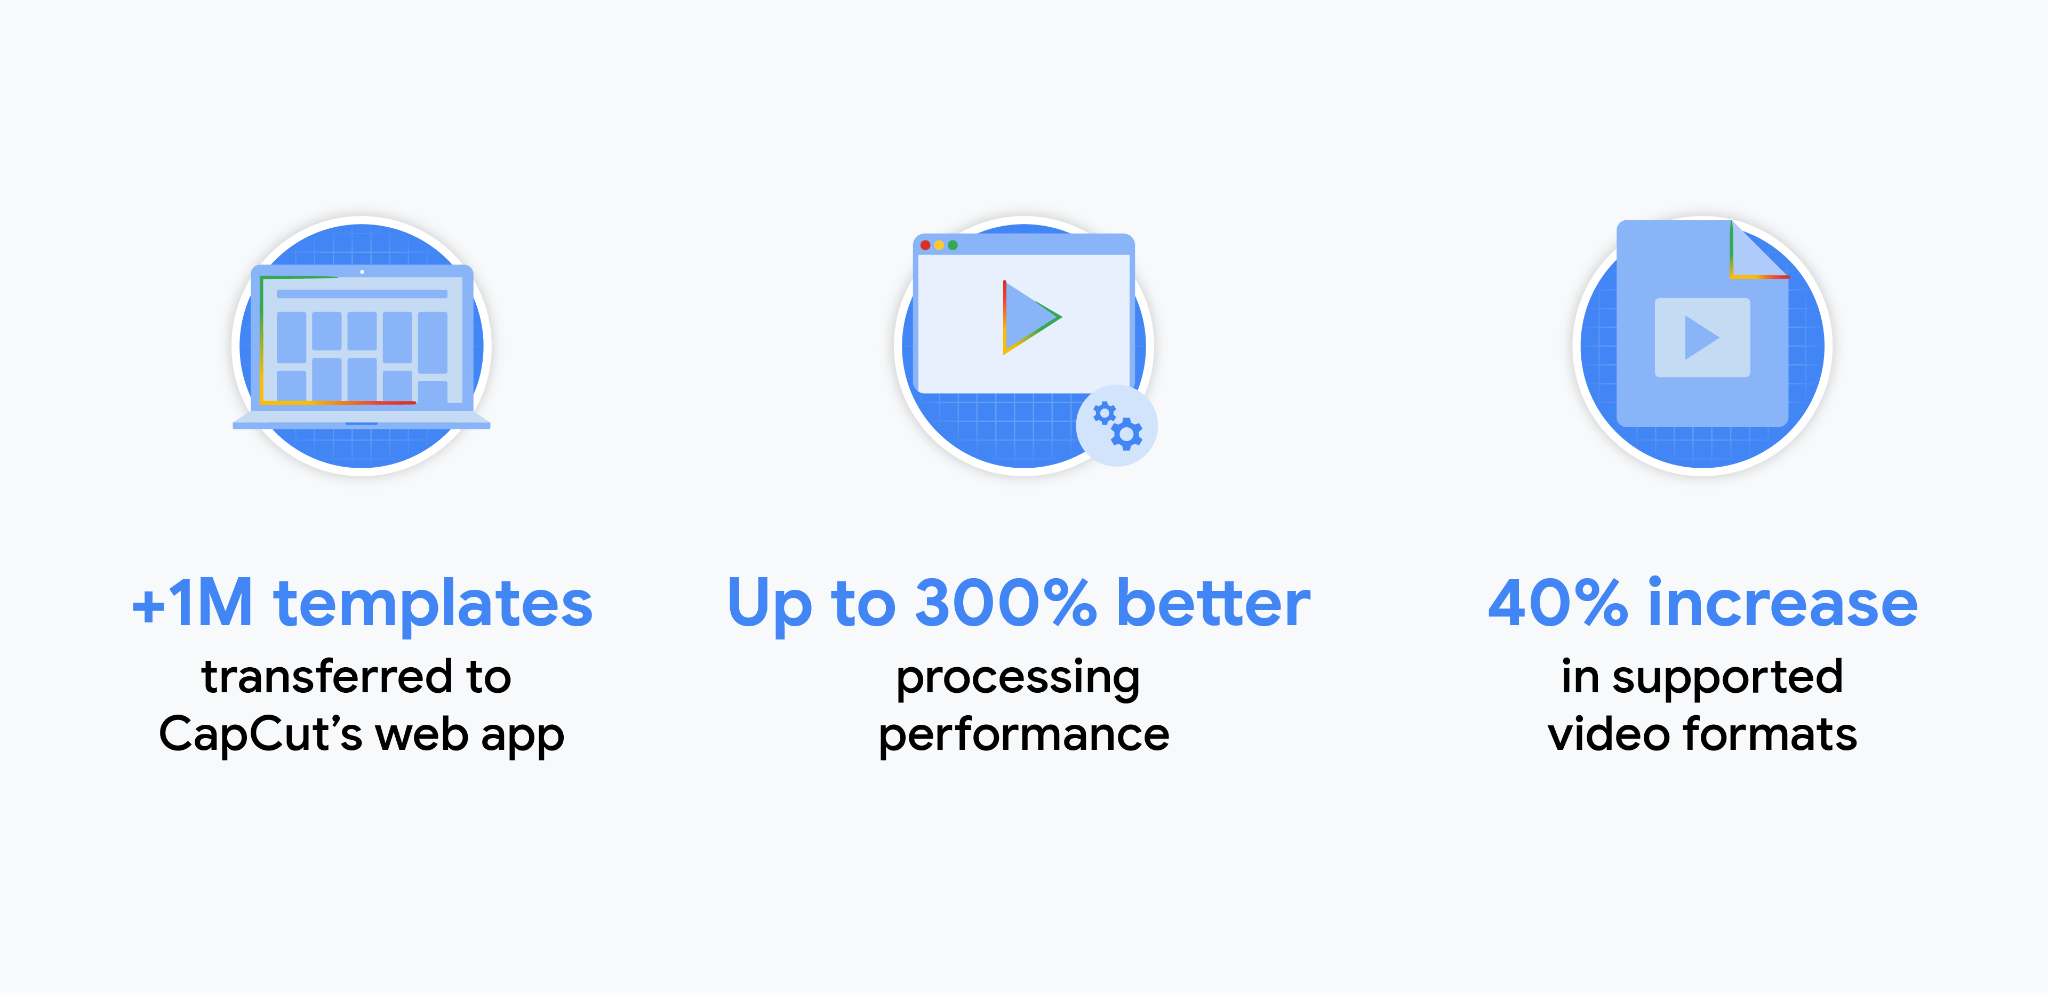 CapCut uygulamasıyla ilgili istatistikler: CapCut&#39;ın web uygulamasına bir milyondan fazla şablon aktarıldı. İşleme performansı% 300&#39;e kadar daha iyi. Desteklenen video biçimlerinde% 40 artış.